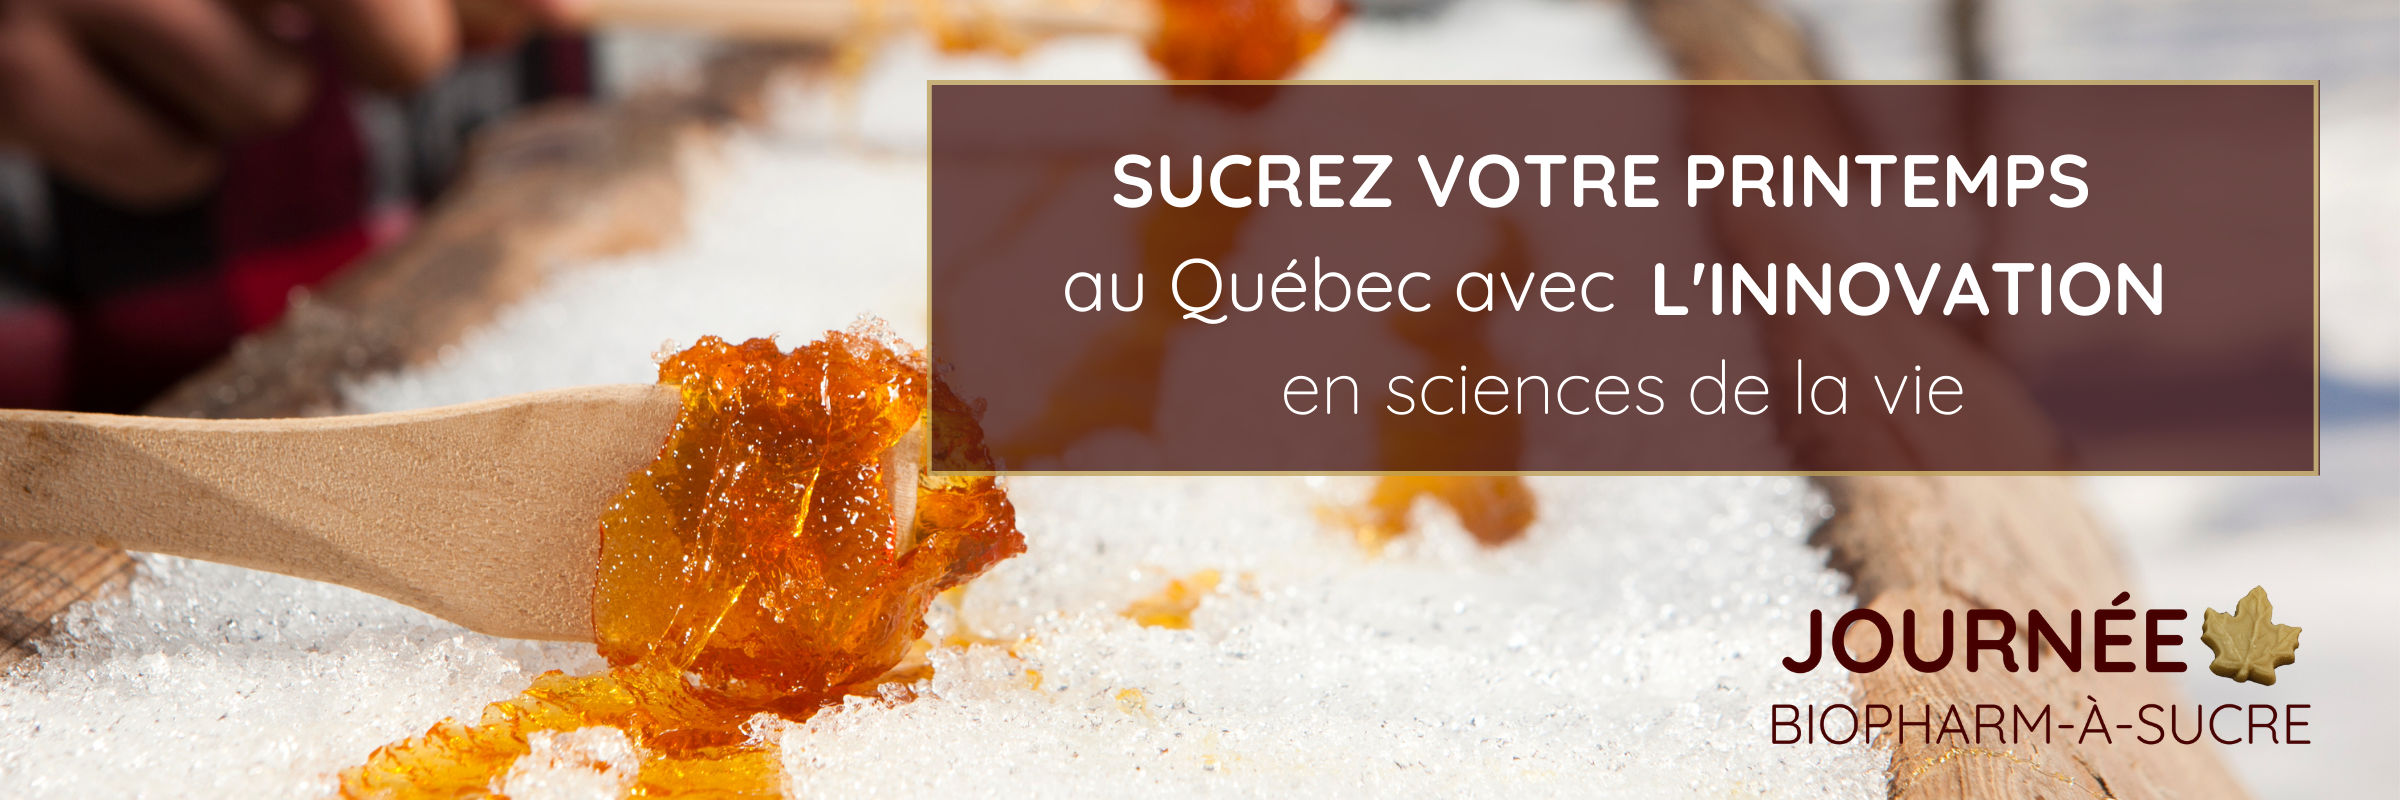 Journée Biopharm-à-sucre (Sweet Pharma Day) Sucrez votre printemps au Québec avec l'innovation en sciences de la vie